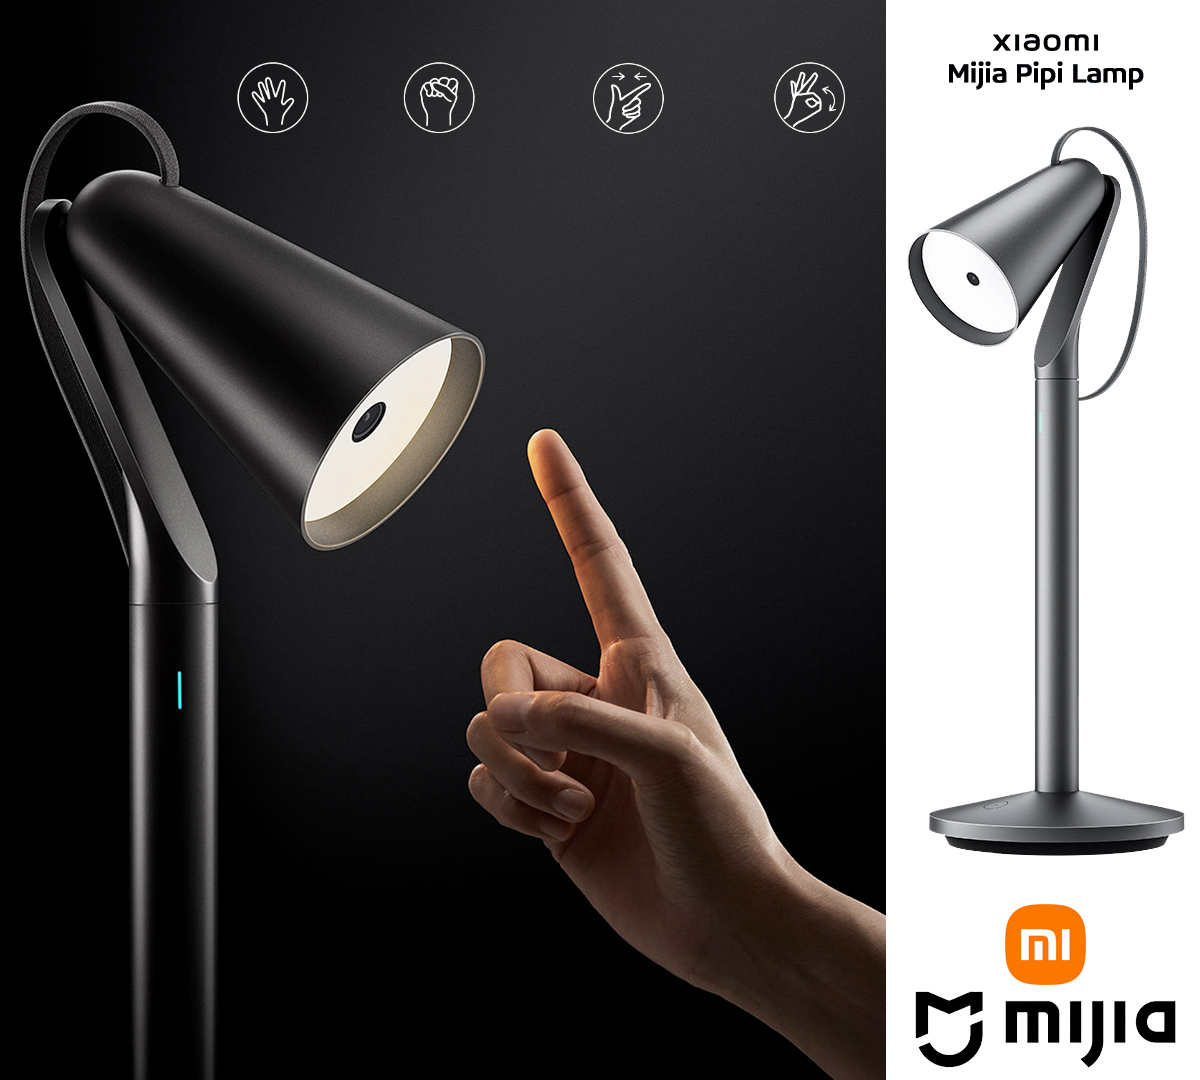 Luminária interativa Xiaomi Mijia Pipi Lamp com câmera IA